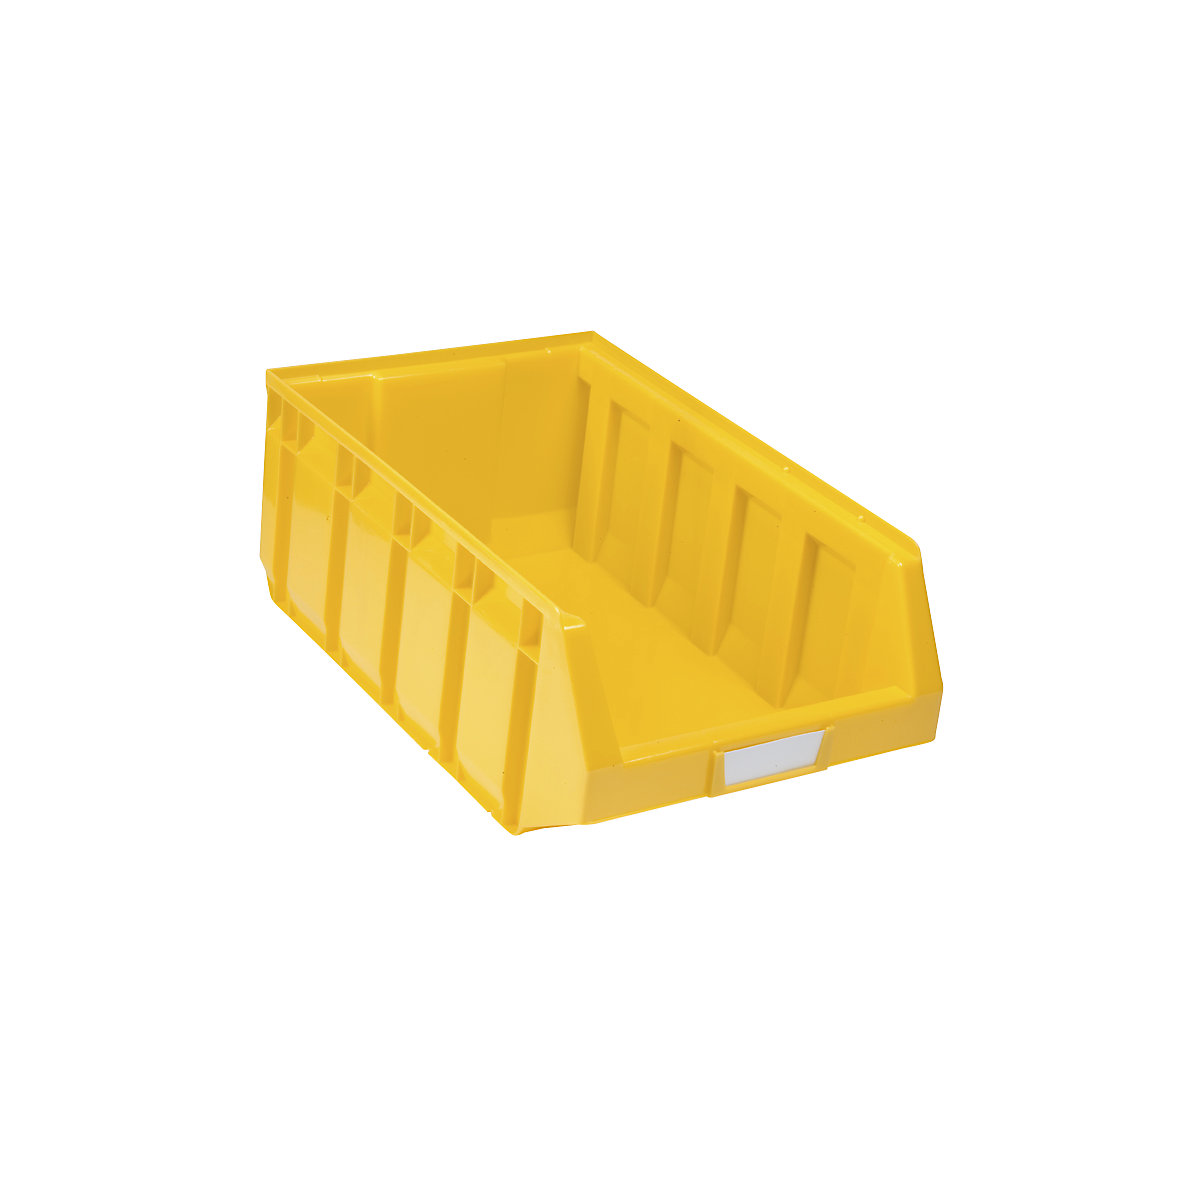 Otwarty pojemnik magazynowy z polietylenu, dł. x szer. x wys. 485 x 298 x 189 mm, żółty, opak. 12 szt.-7